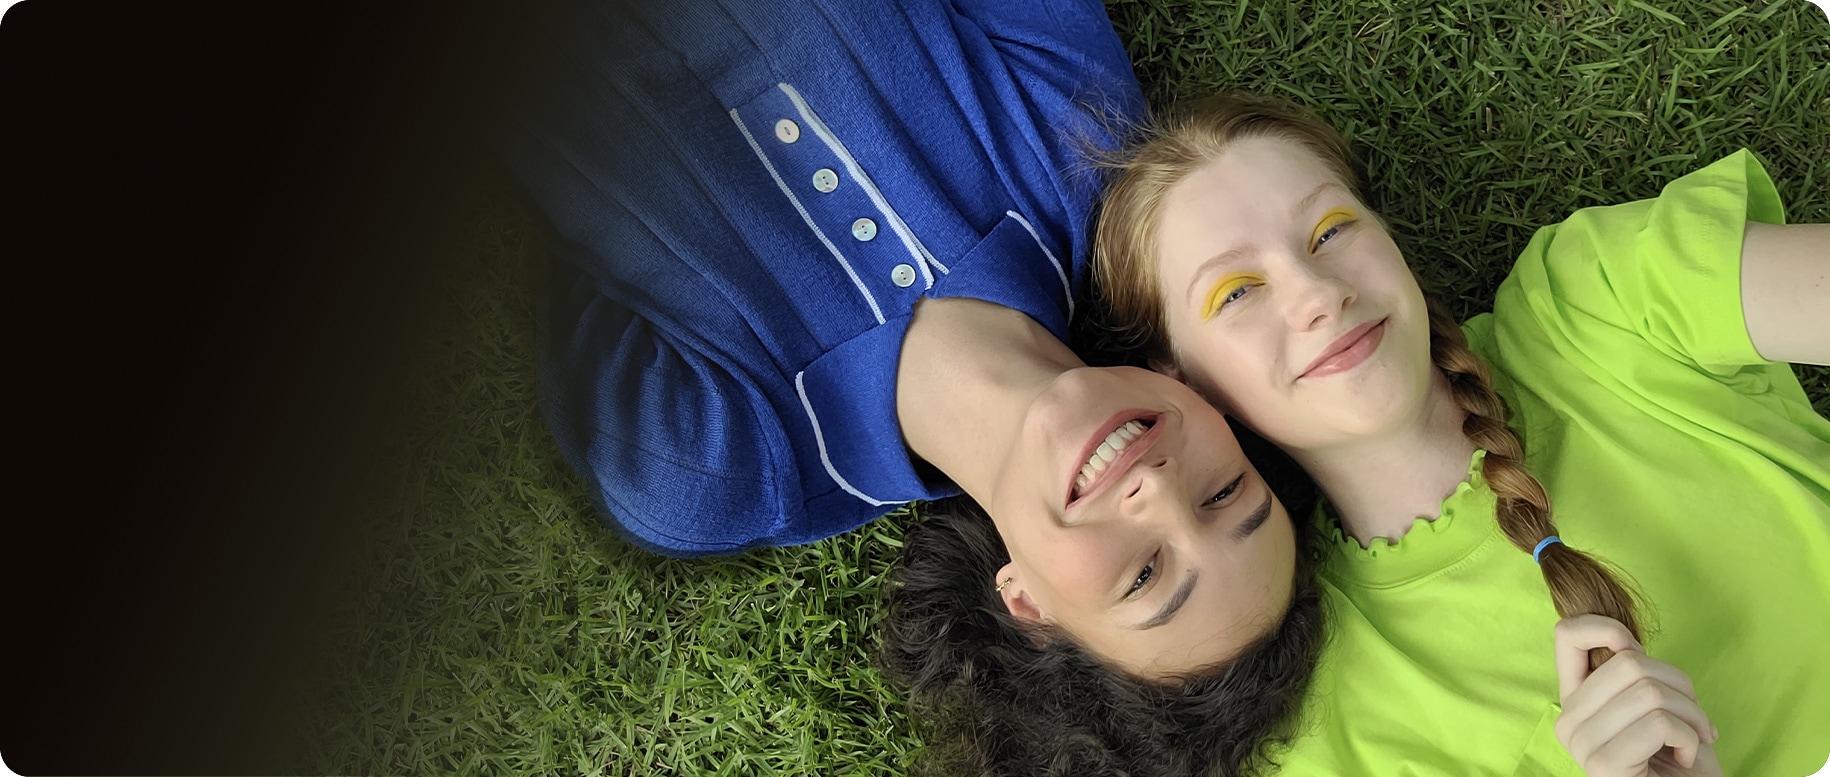 Una veduta aerea di due donne sdraiate fianco a fianco sull'erba. La donna a sinistra indossa una camicia con colletto blu mentre la donna a destra indossa un top verde lime. Le loro teste sono premute insieme dalle estremità opposte. Sorridono entrambi alla telecamera.